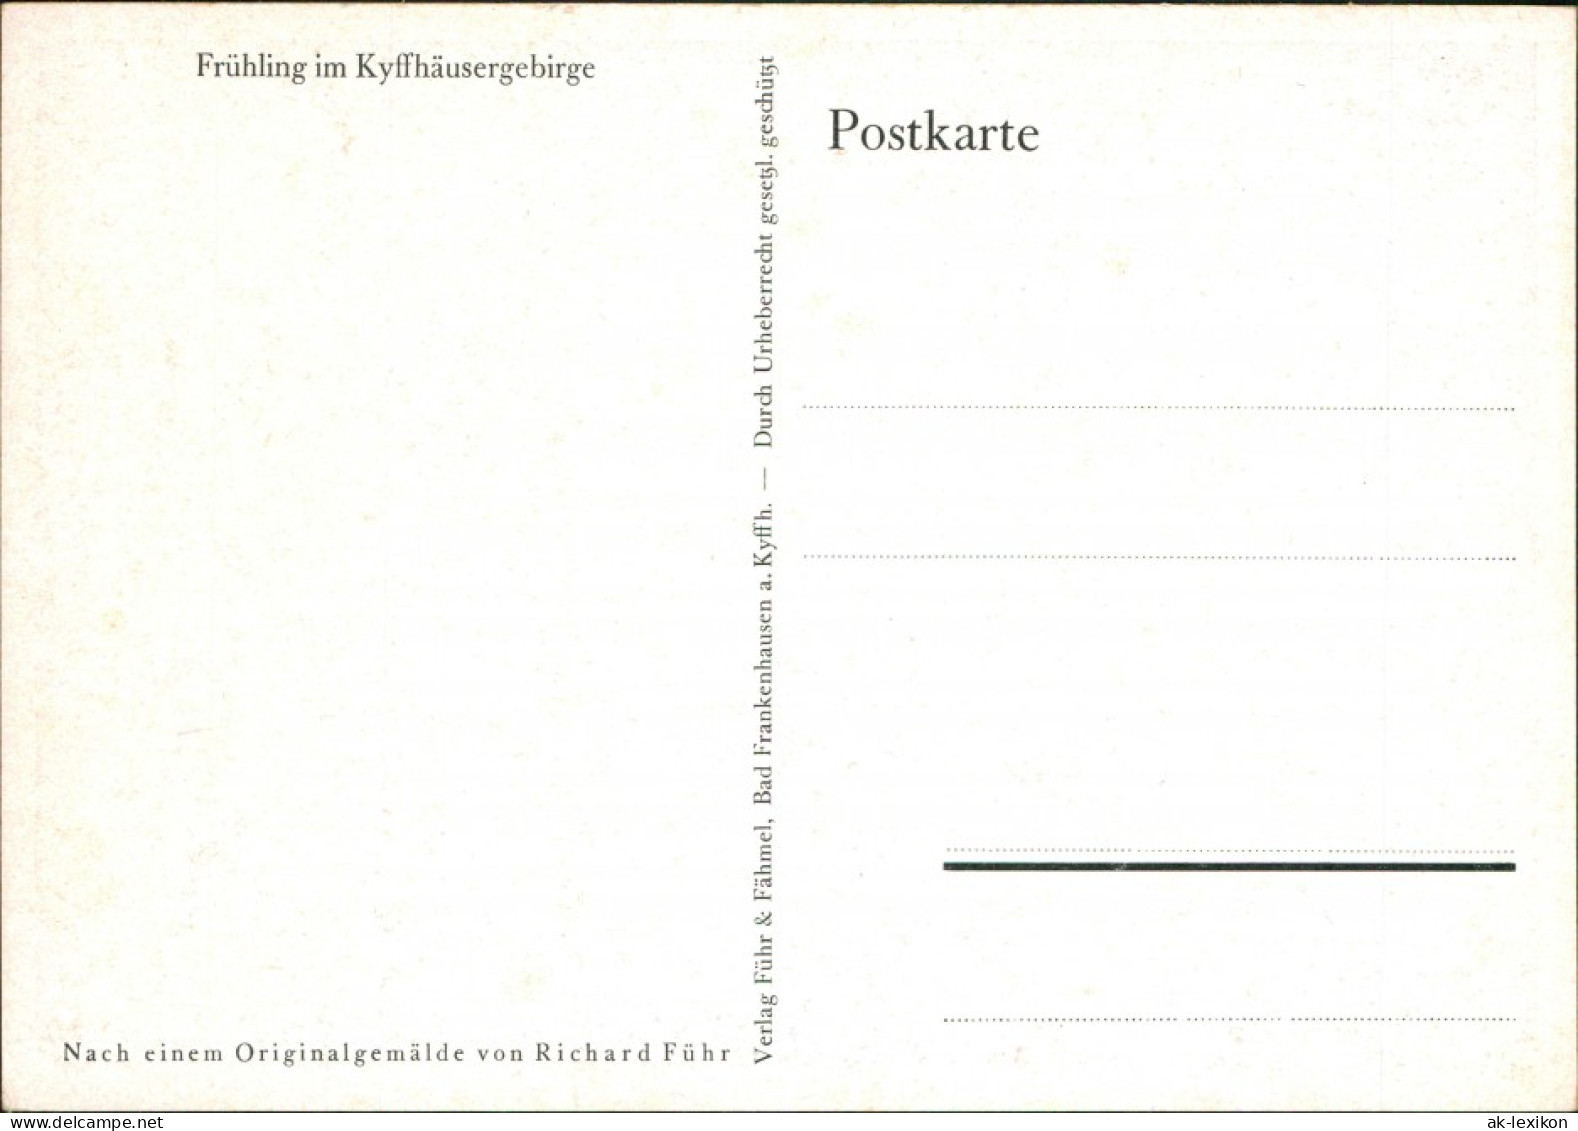 Kyffhäuserland Künstlerkarte: "Frühling Im Kyffhäuserland" 1928 - Kyffhäuser